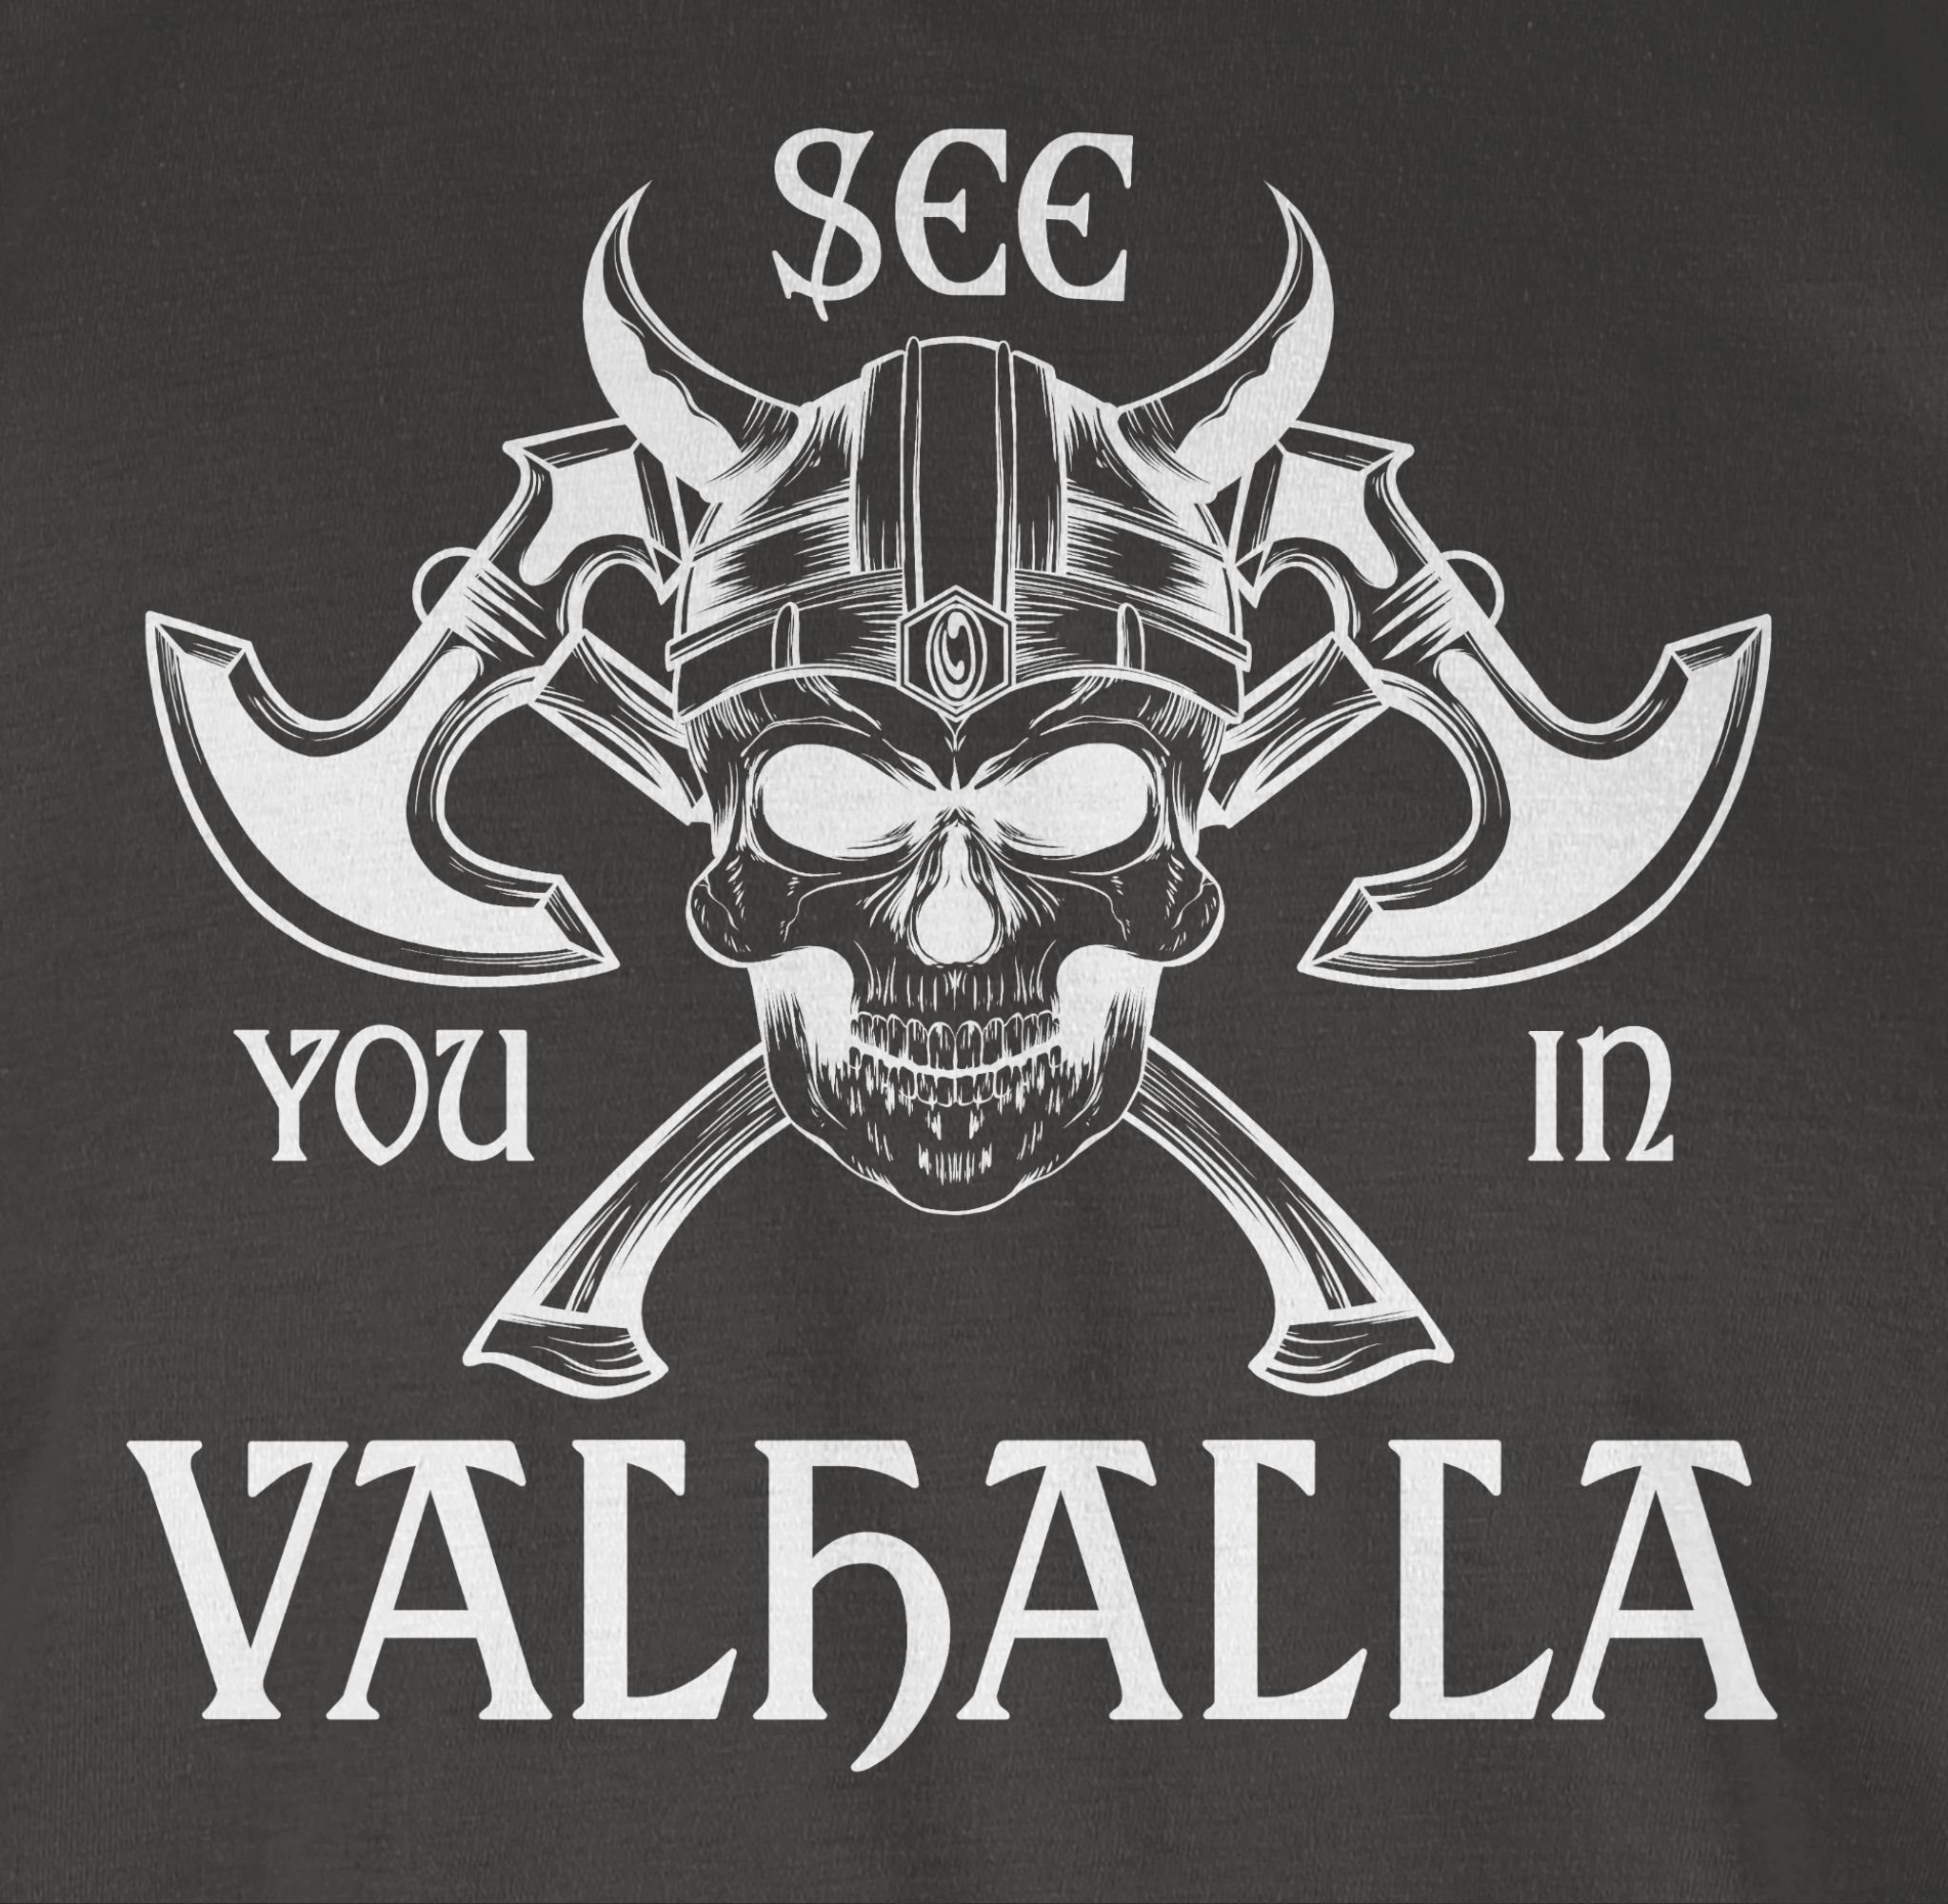 in See Dunkelgrau Herren 02 Wikinger Shirtracer Walhalla Valhalla & T-Shirt you